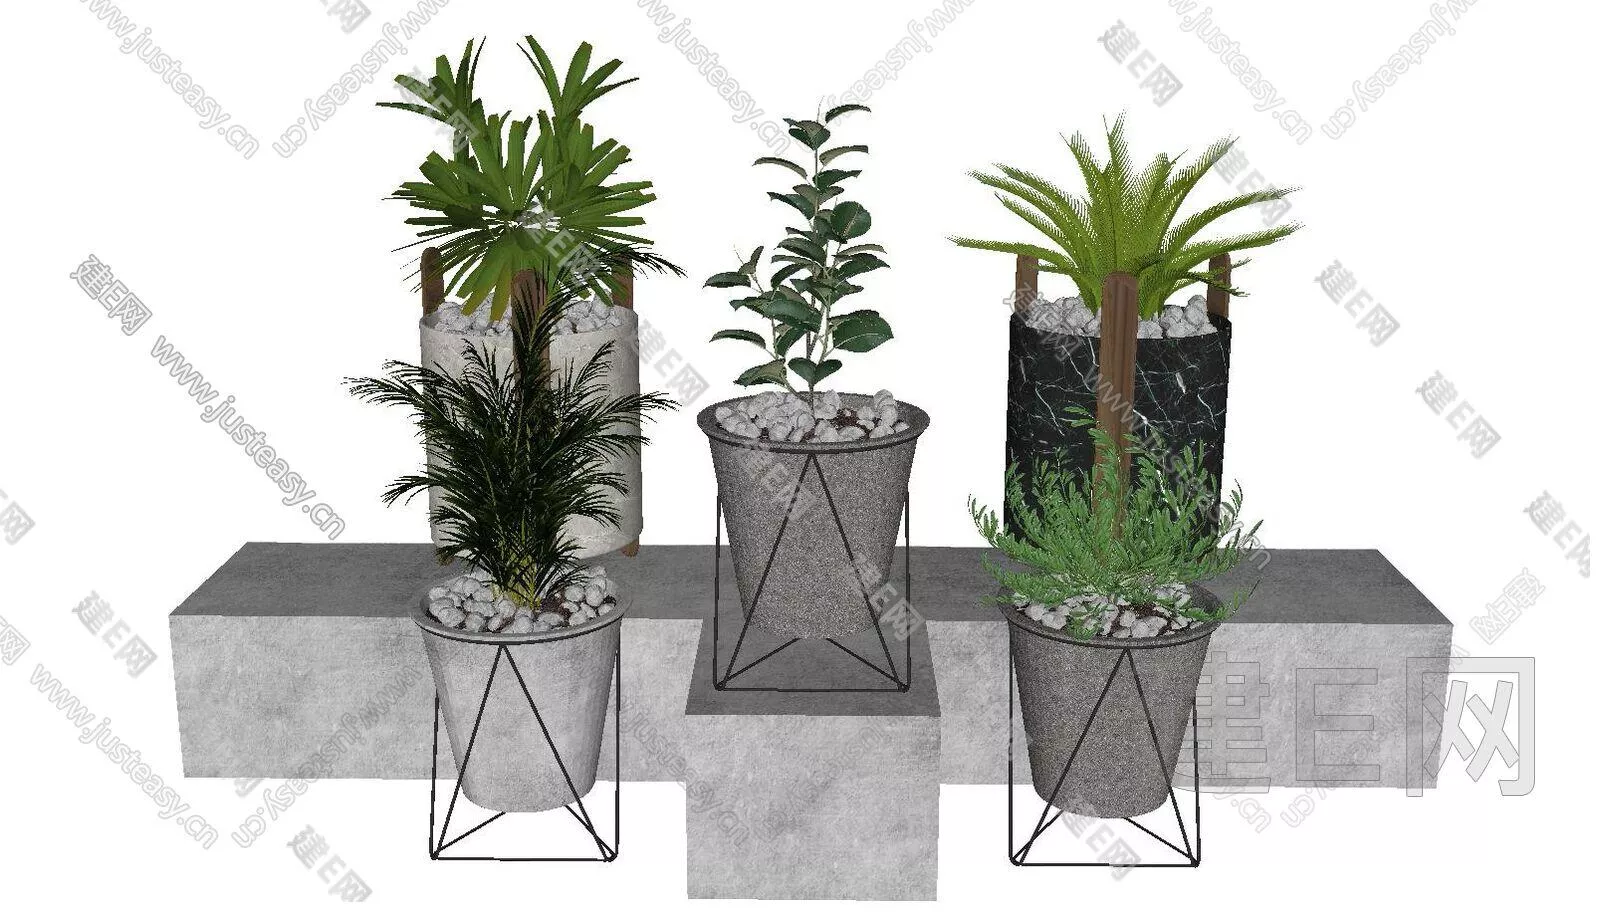 MODERN POTTED PLANT - SKETCHUP 3D MODEL - ENSCAPE - 113131896